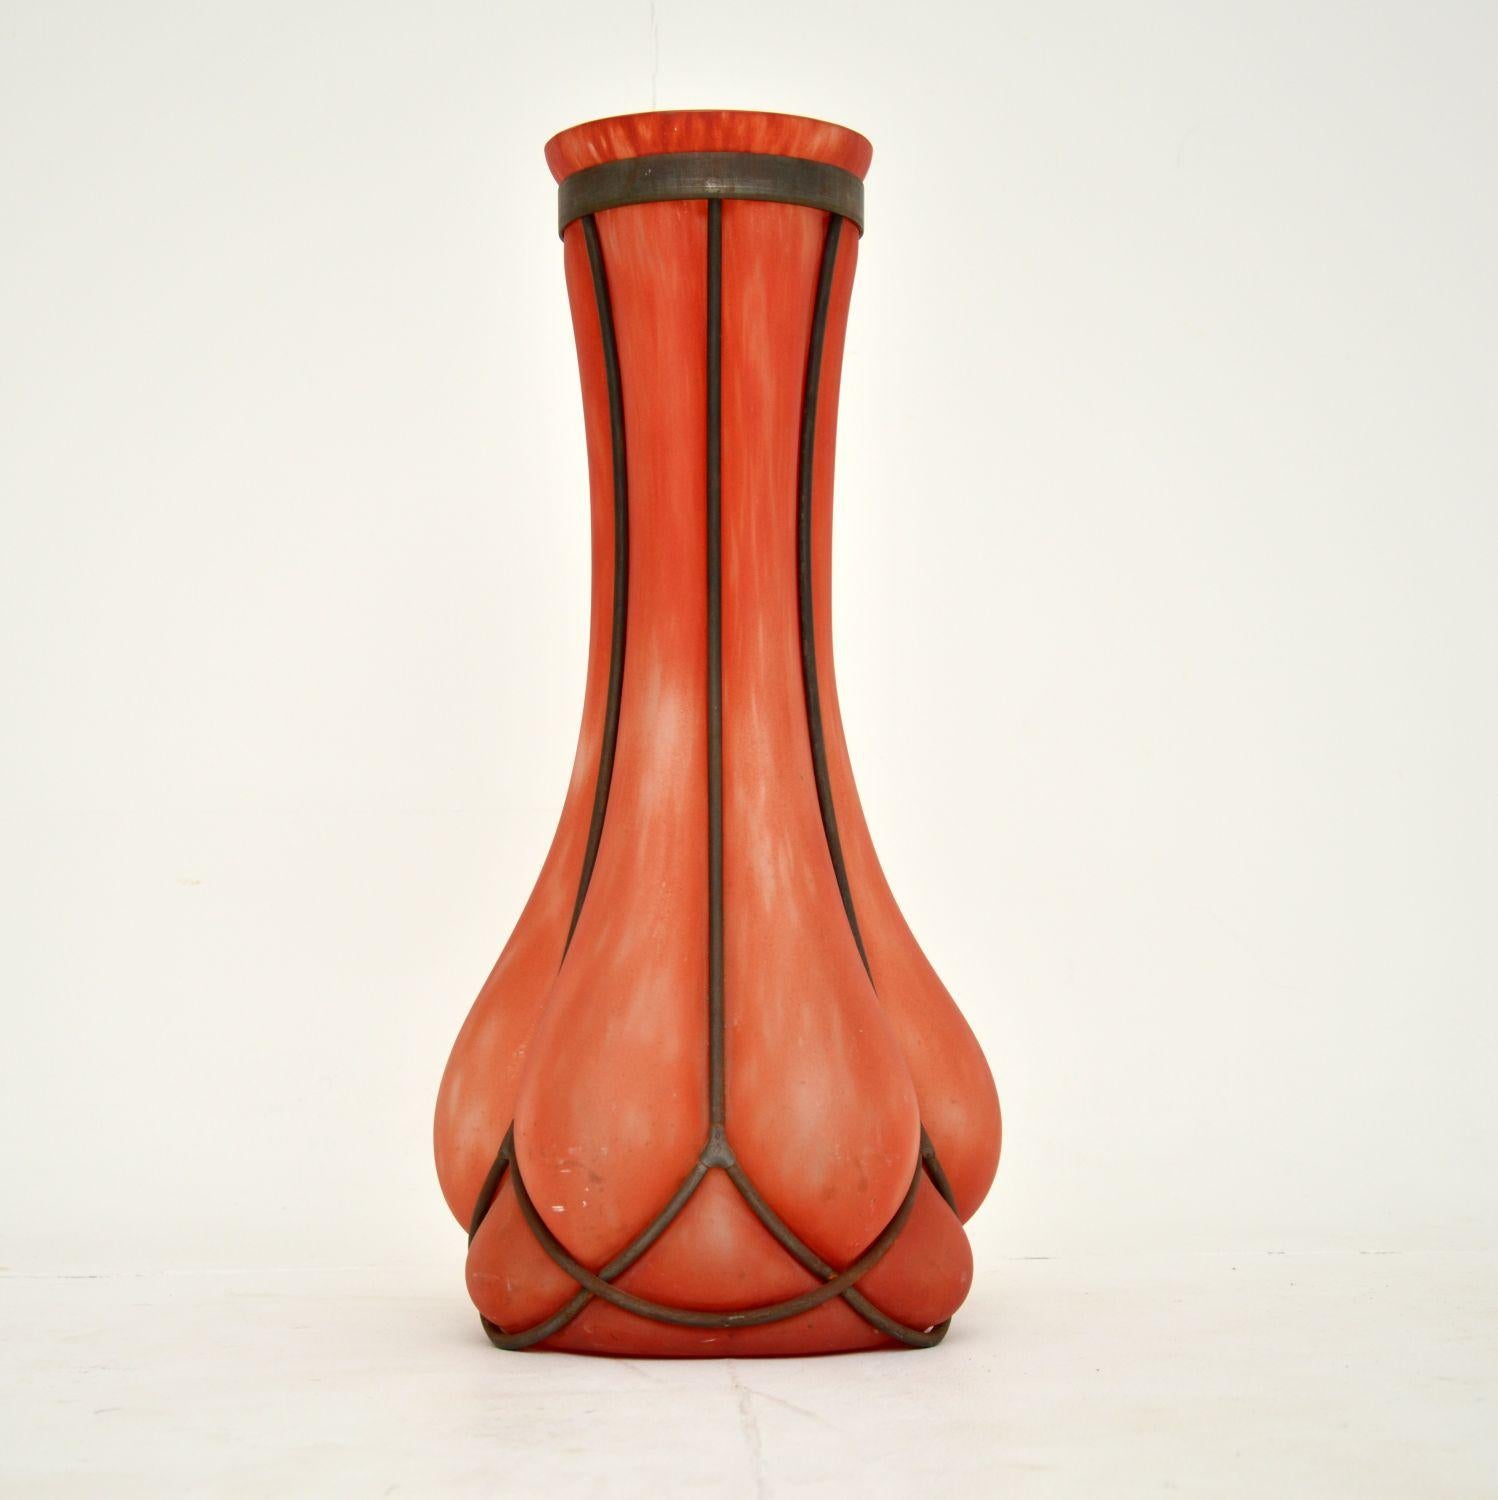 Eine absolut wunderschöne Vase aus Glas und Zinn. Es ist schwierig zu datieren, aber ich würde sagen, dass es etwa aus den 1930-50er Jahren stammt, aber es könnte auch älter sein.

Es ist wunderschön gemacht und hat eine beeindruckende Größe. Das